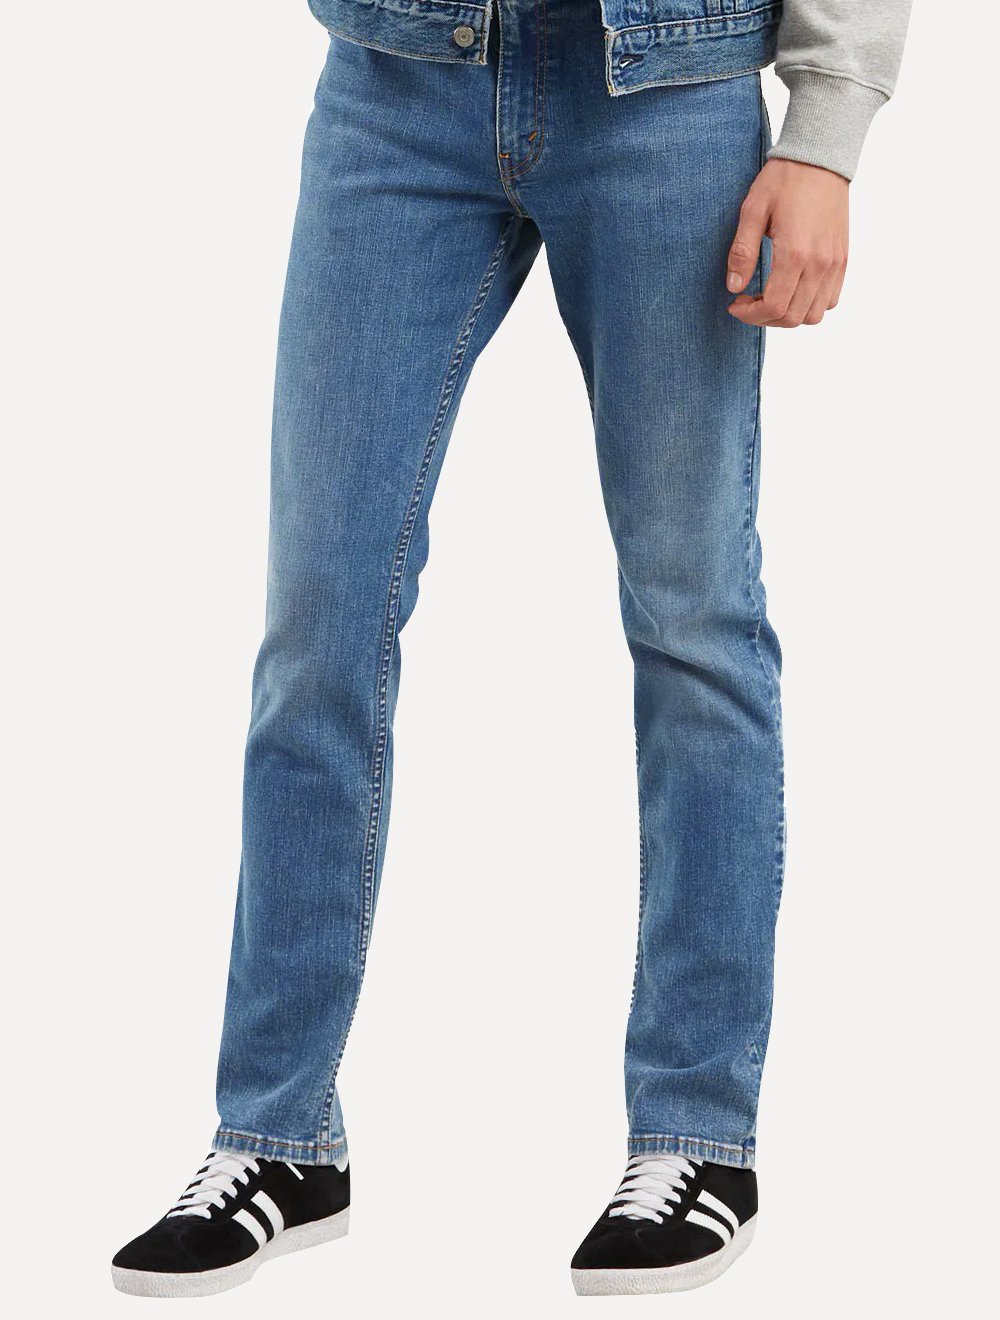 Calça Levis Jeans Masculina 511 Slim Stretch Washed Azul